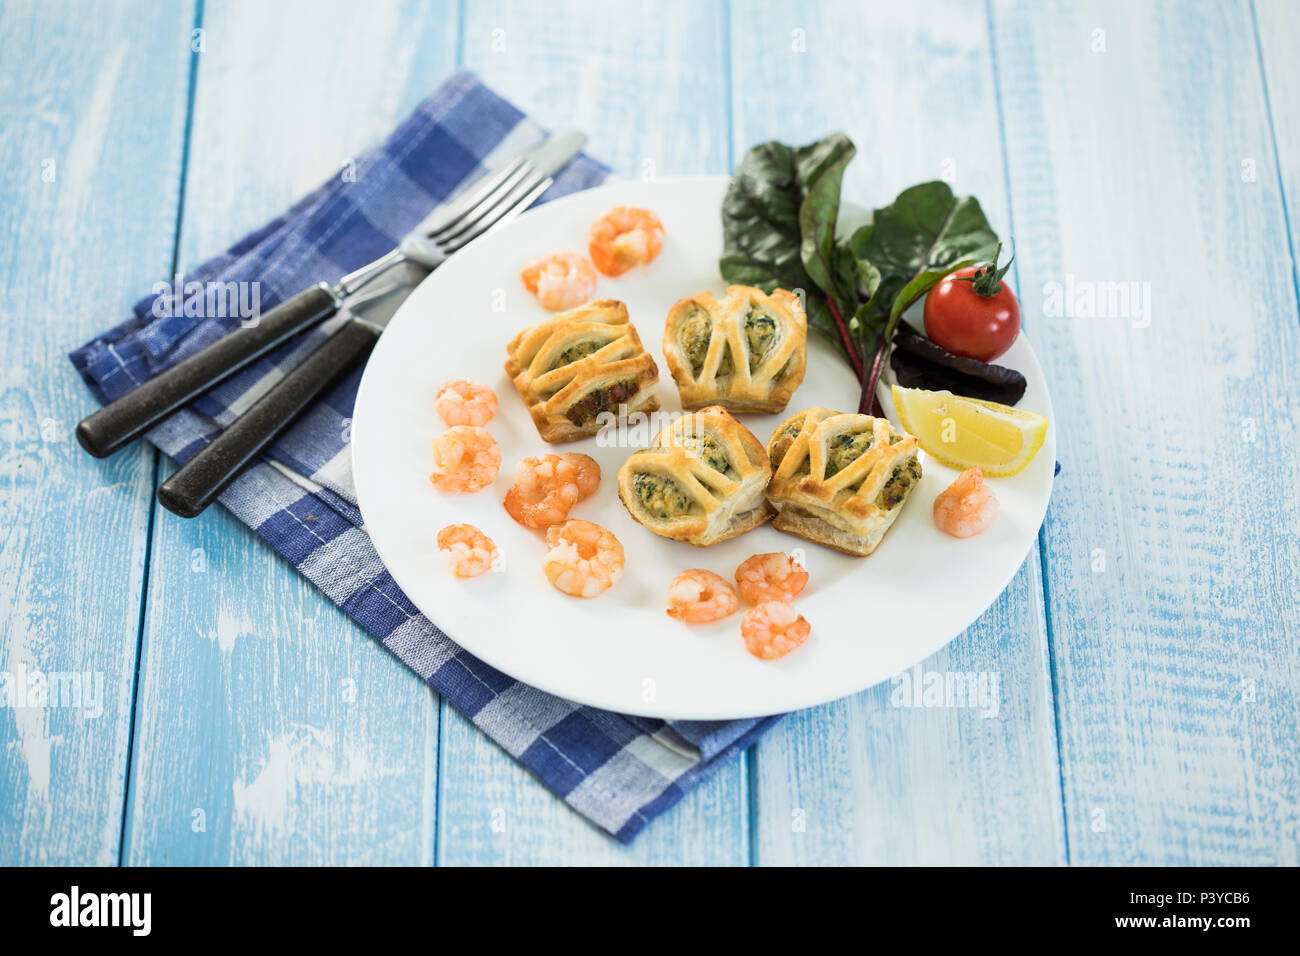 Blätterteigtaschen gefüllt mit Lachs & Spinat, Garnelen und Frischkäse, frischer Blattspinat Stock Photo